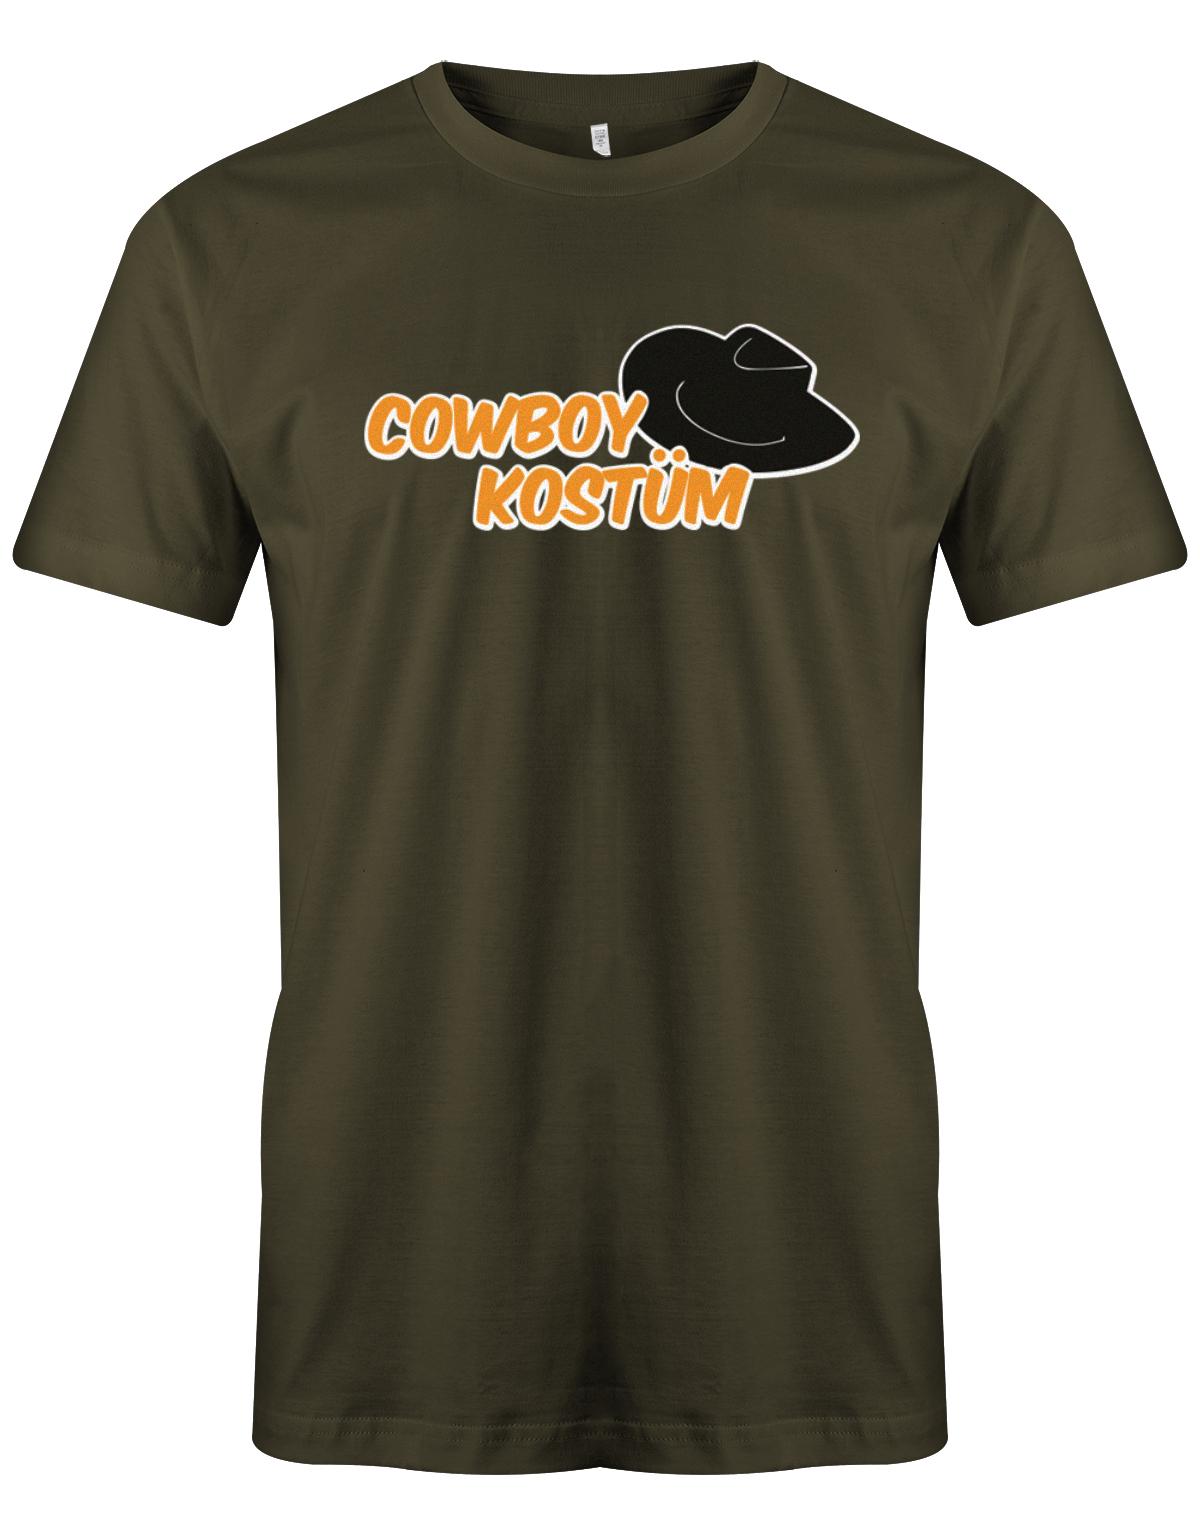 Cowboy-Kost-m-Hut-Fasching-Shirt-Army